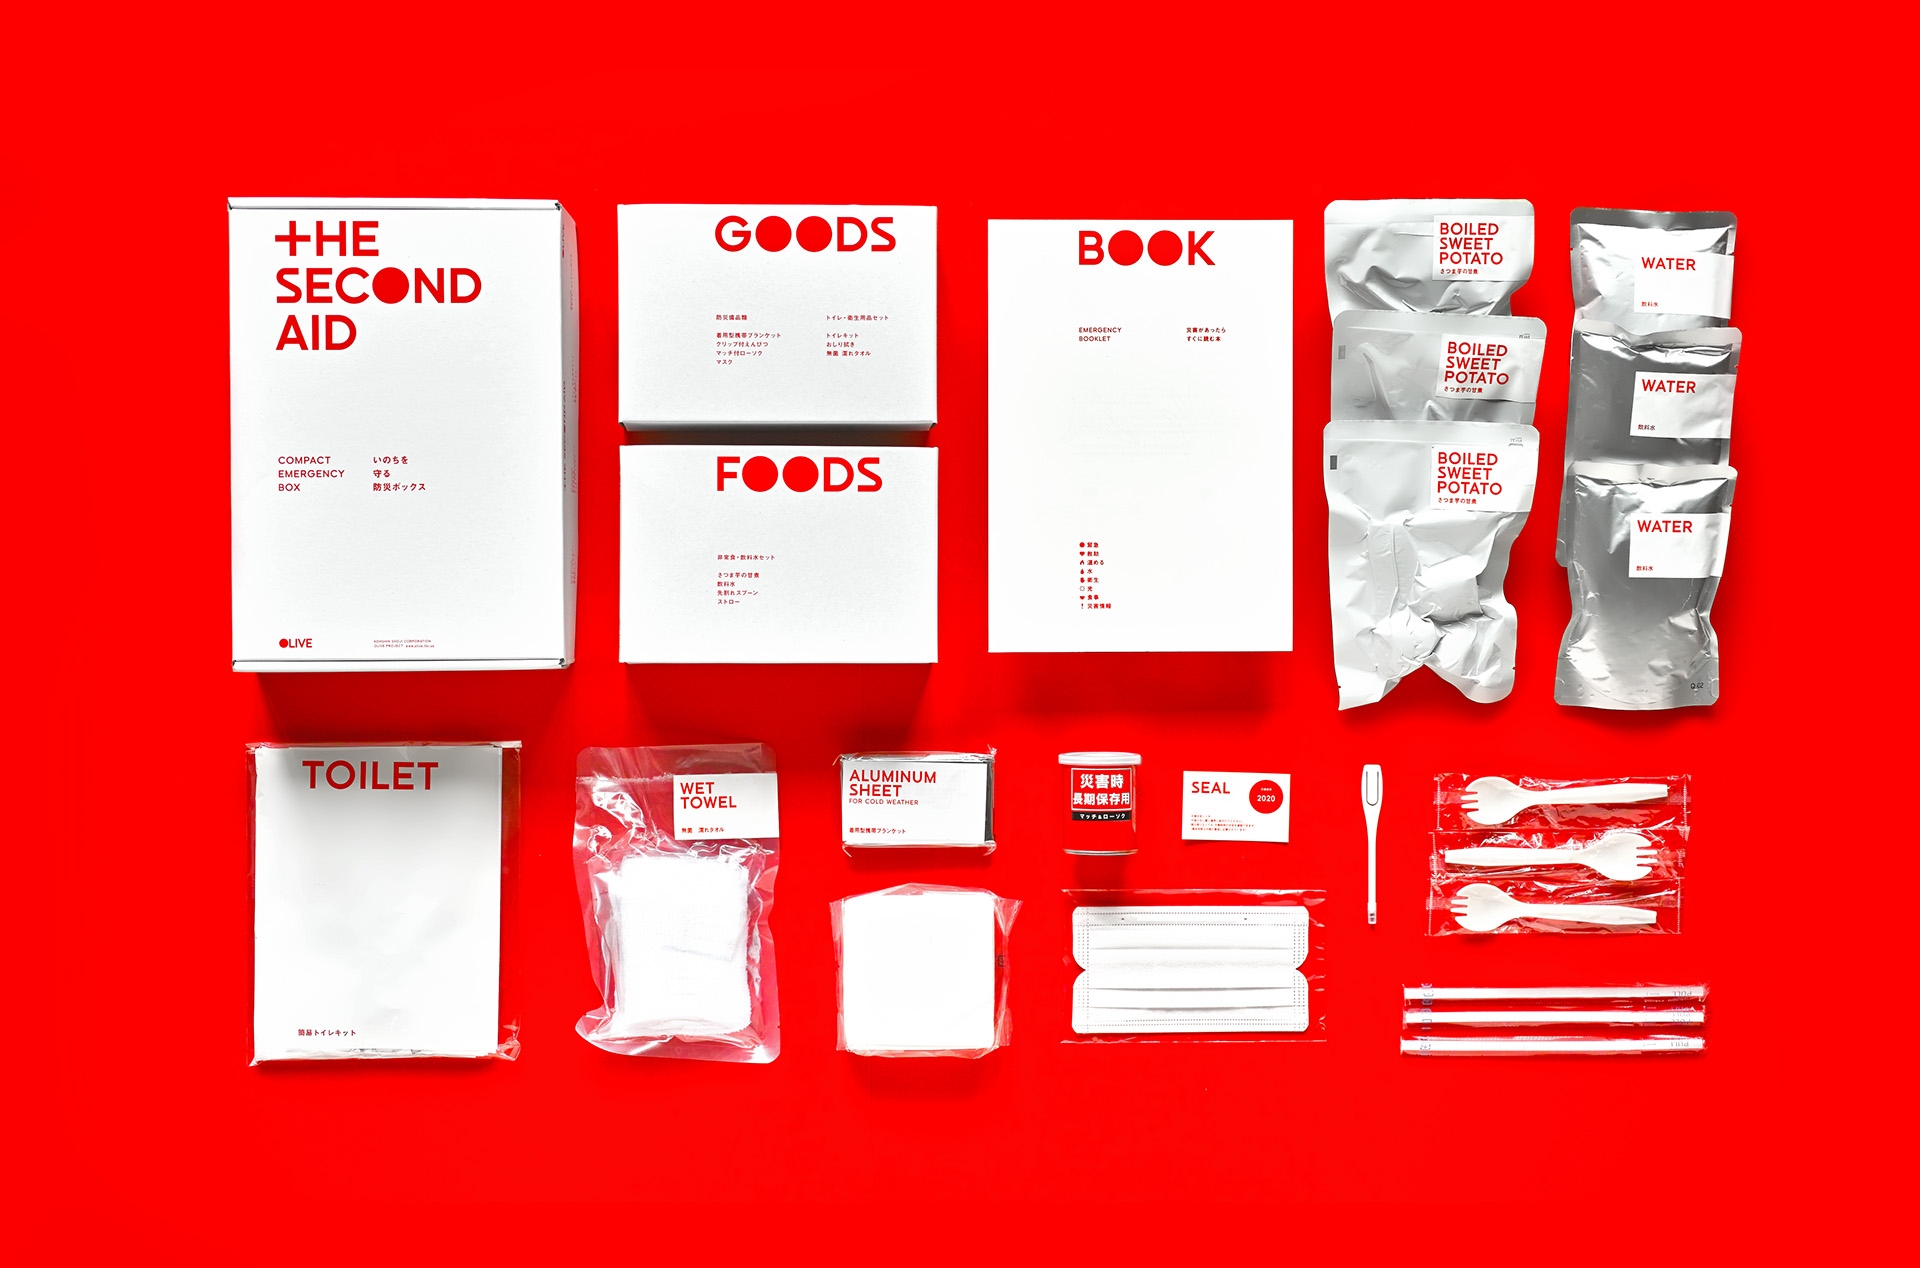 地震“第二援助”灾难工具包品牌包装设计